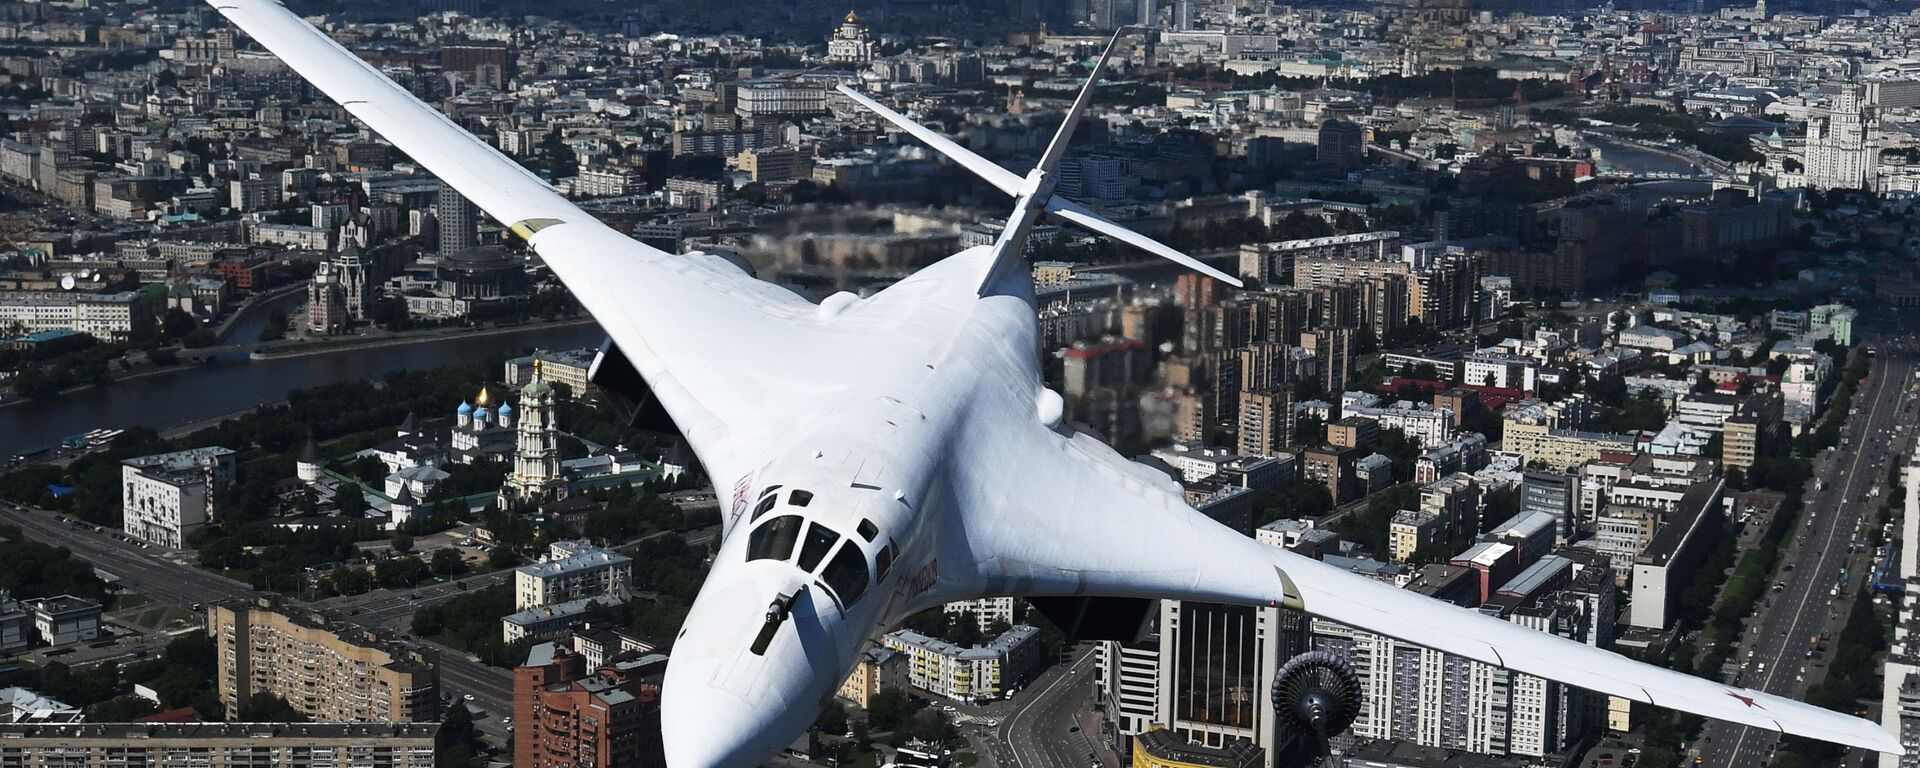 სტრატეგიული ბომბდამშენი Ту-160 აღლუმზე - Sputnik საქართველო, 1920, 07.08.2021